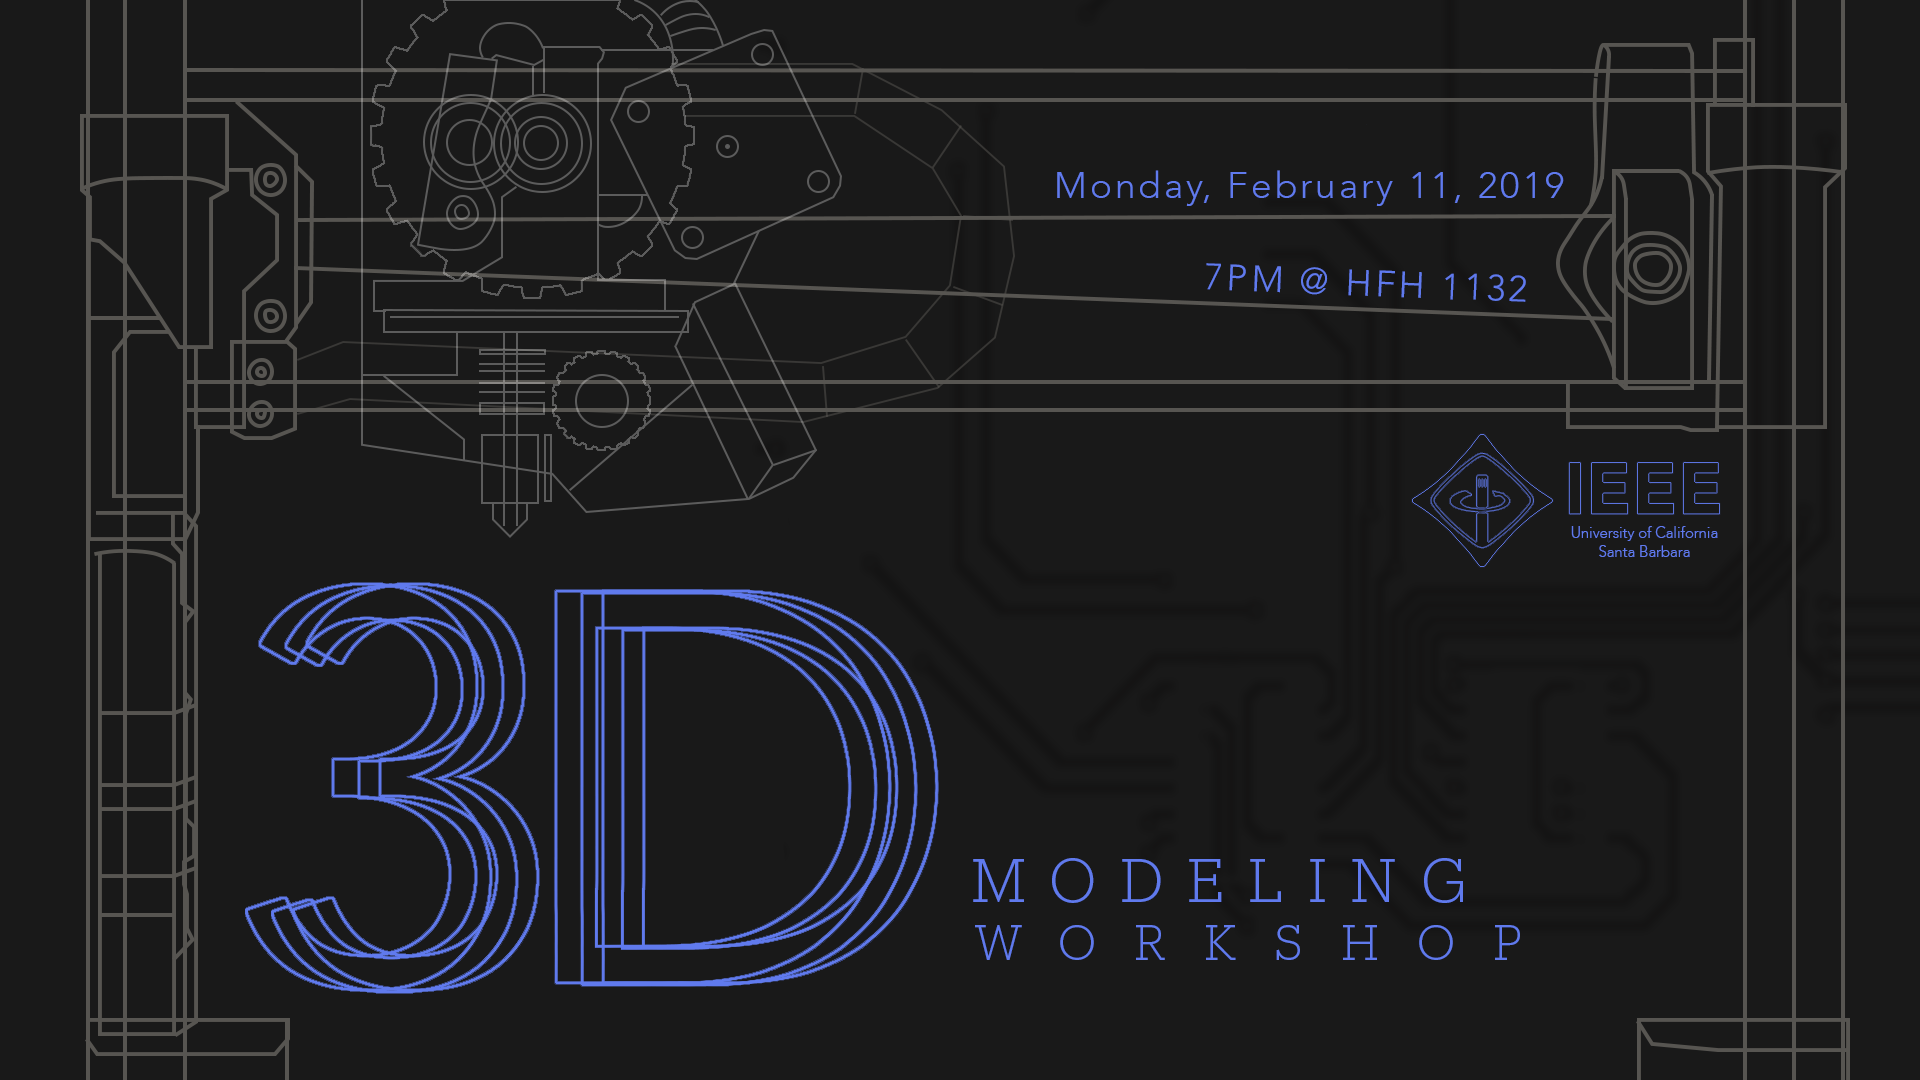 3D Modeling / Printing Workshop